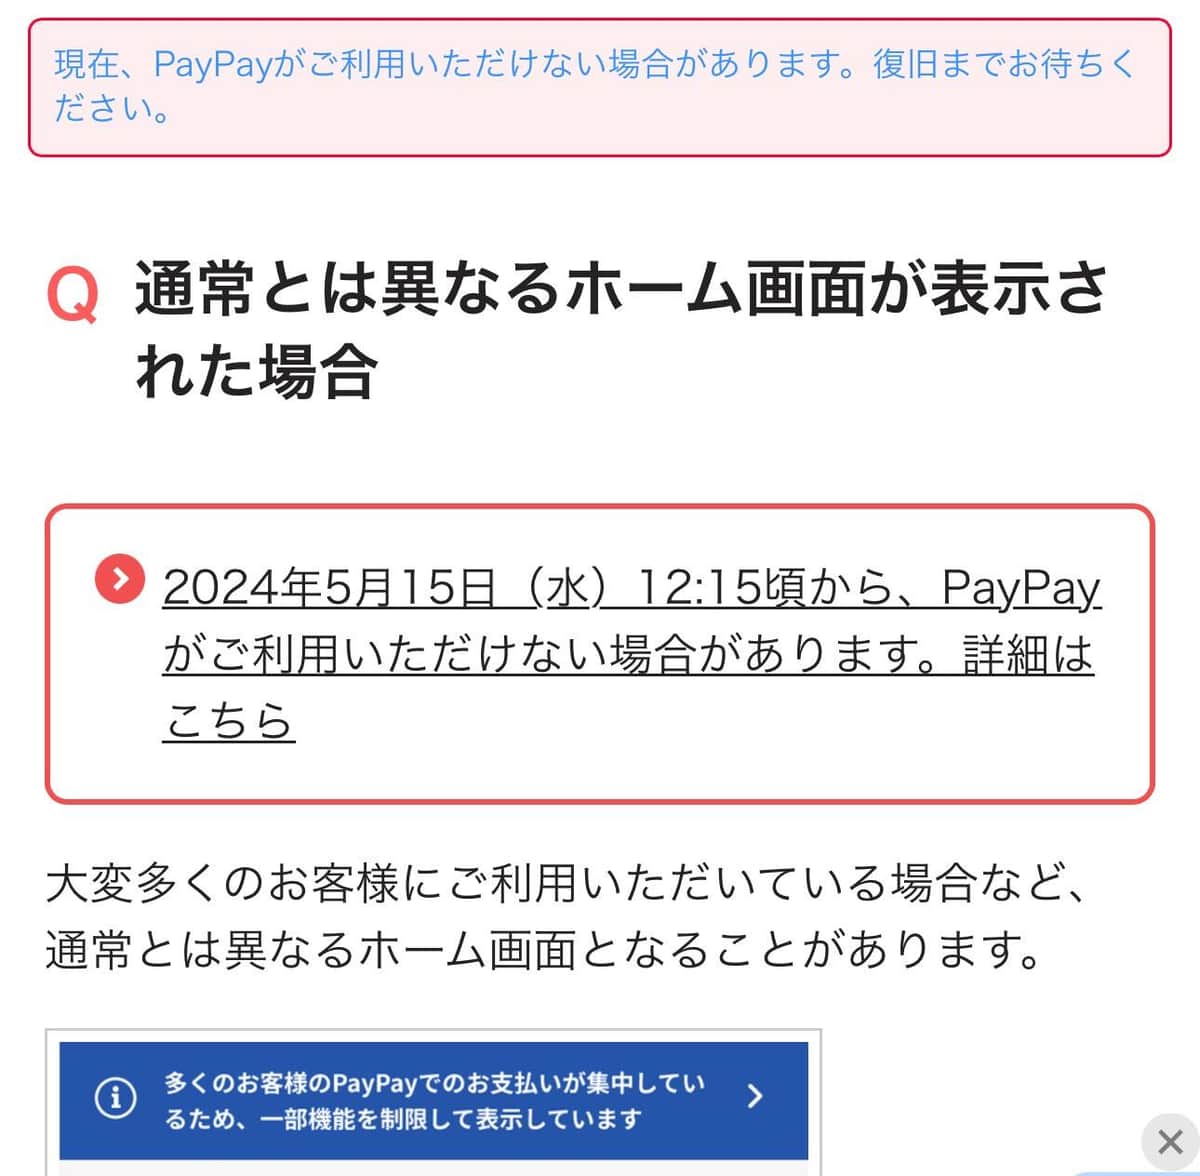 ウェブサイトには、PayPayが利用できない旨のお知らせが掲載された